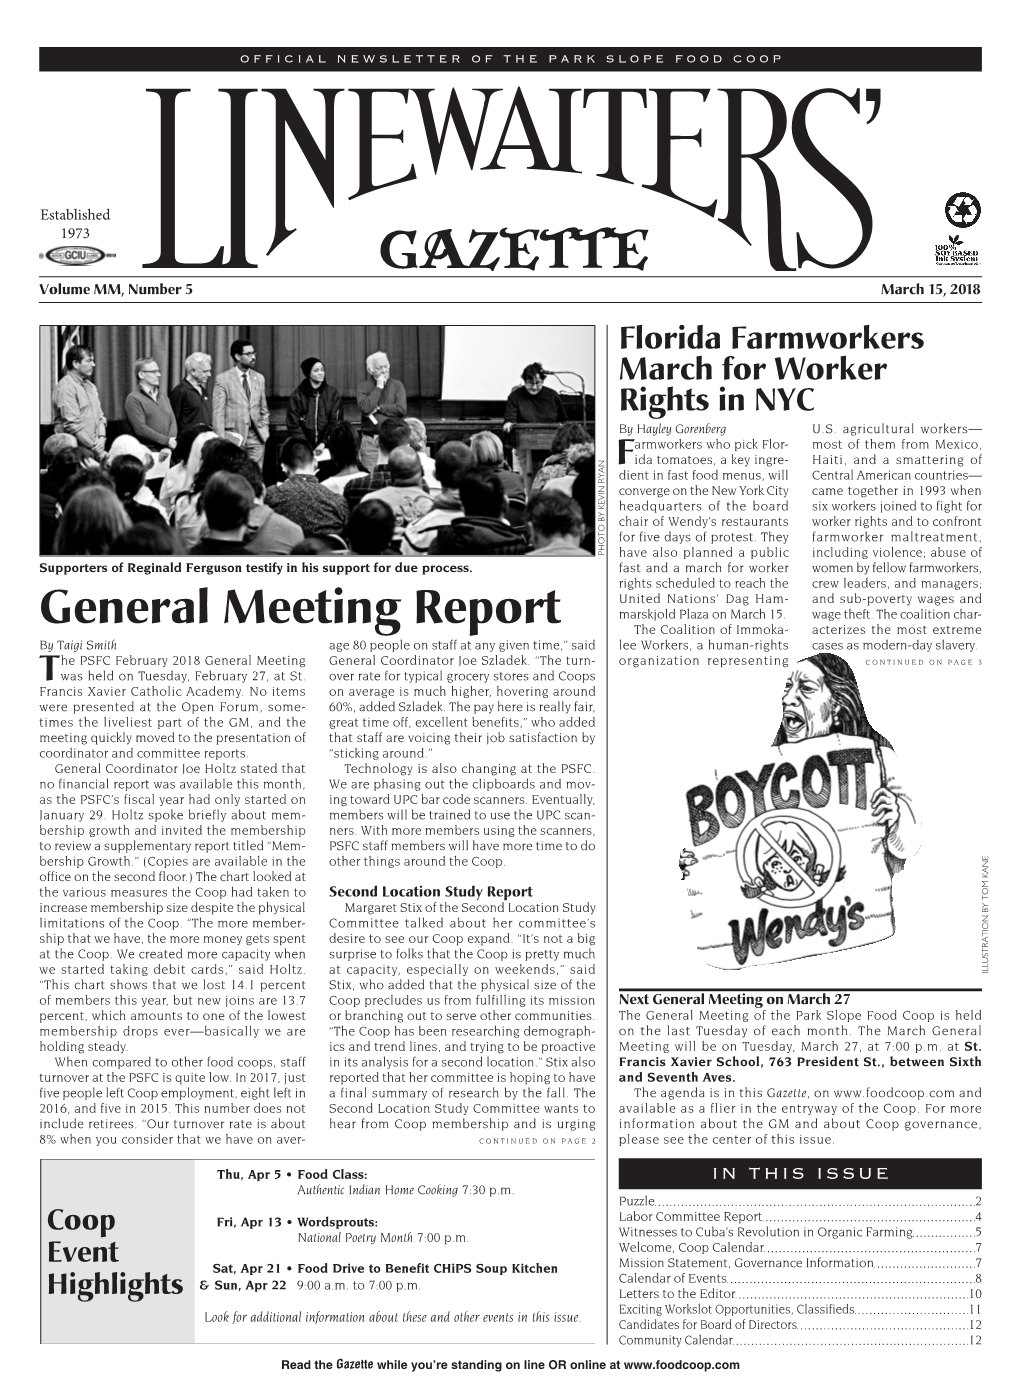 General Meeting Report